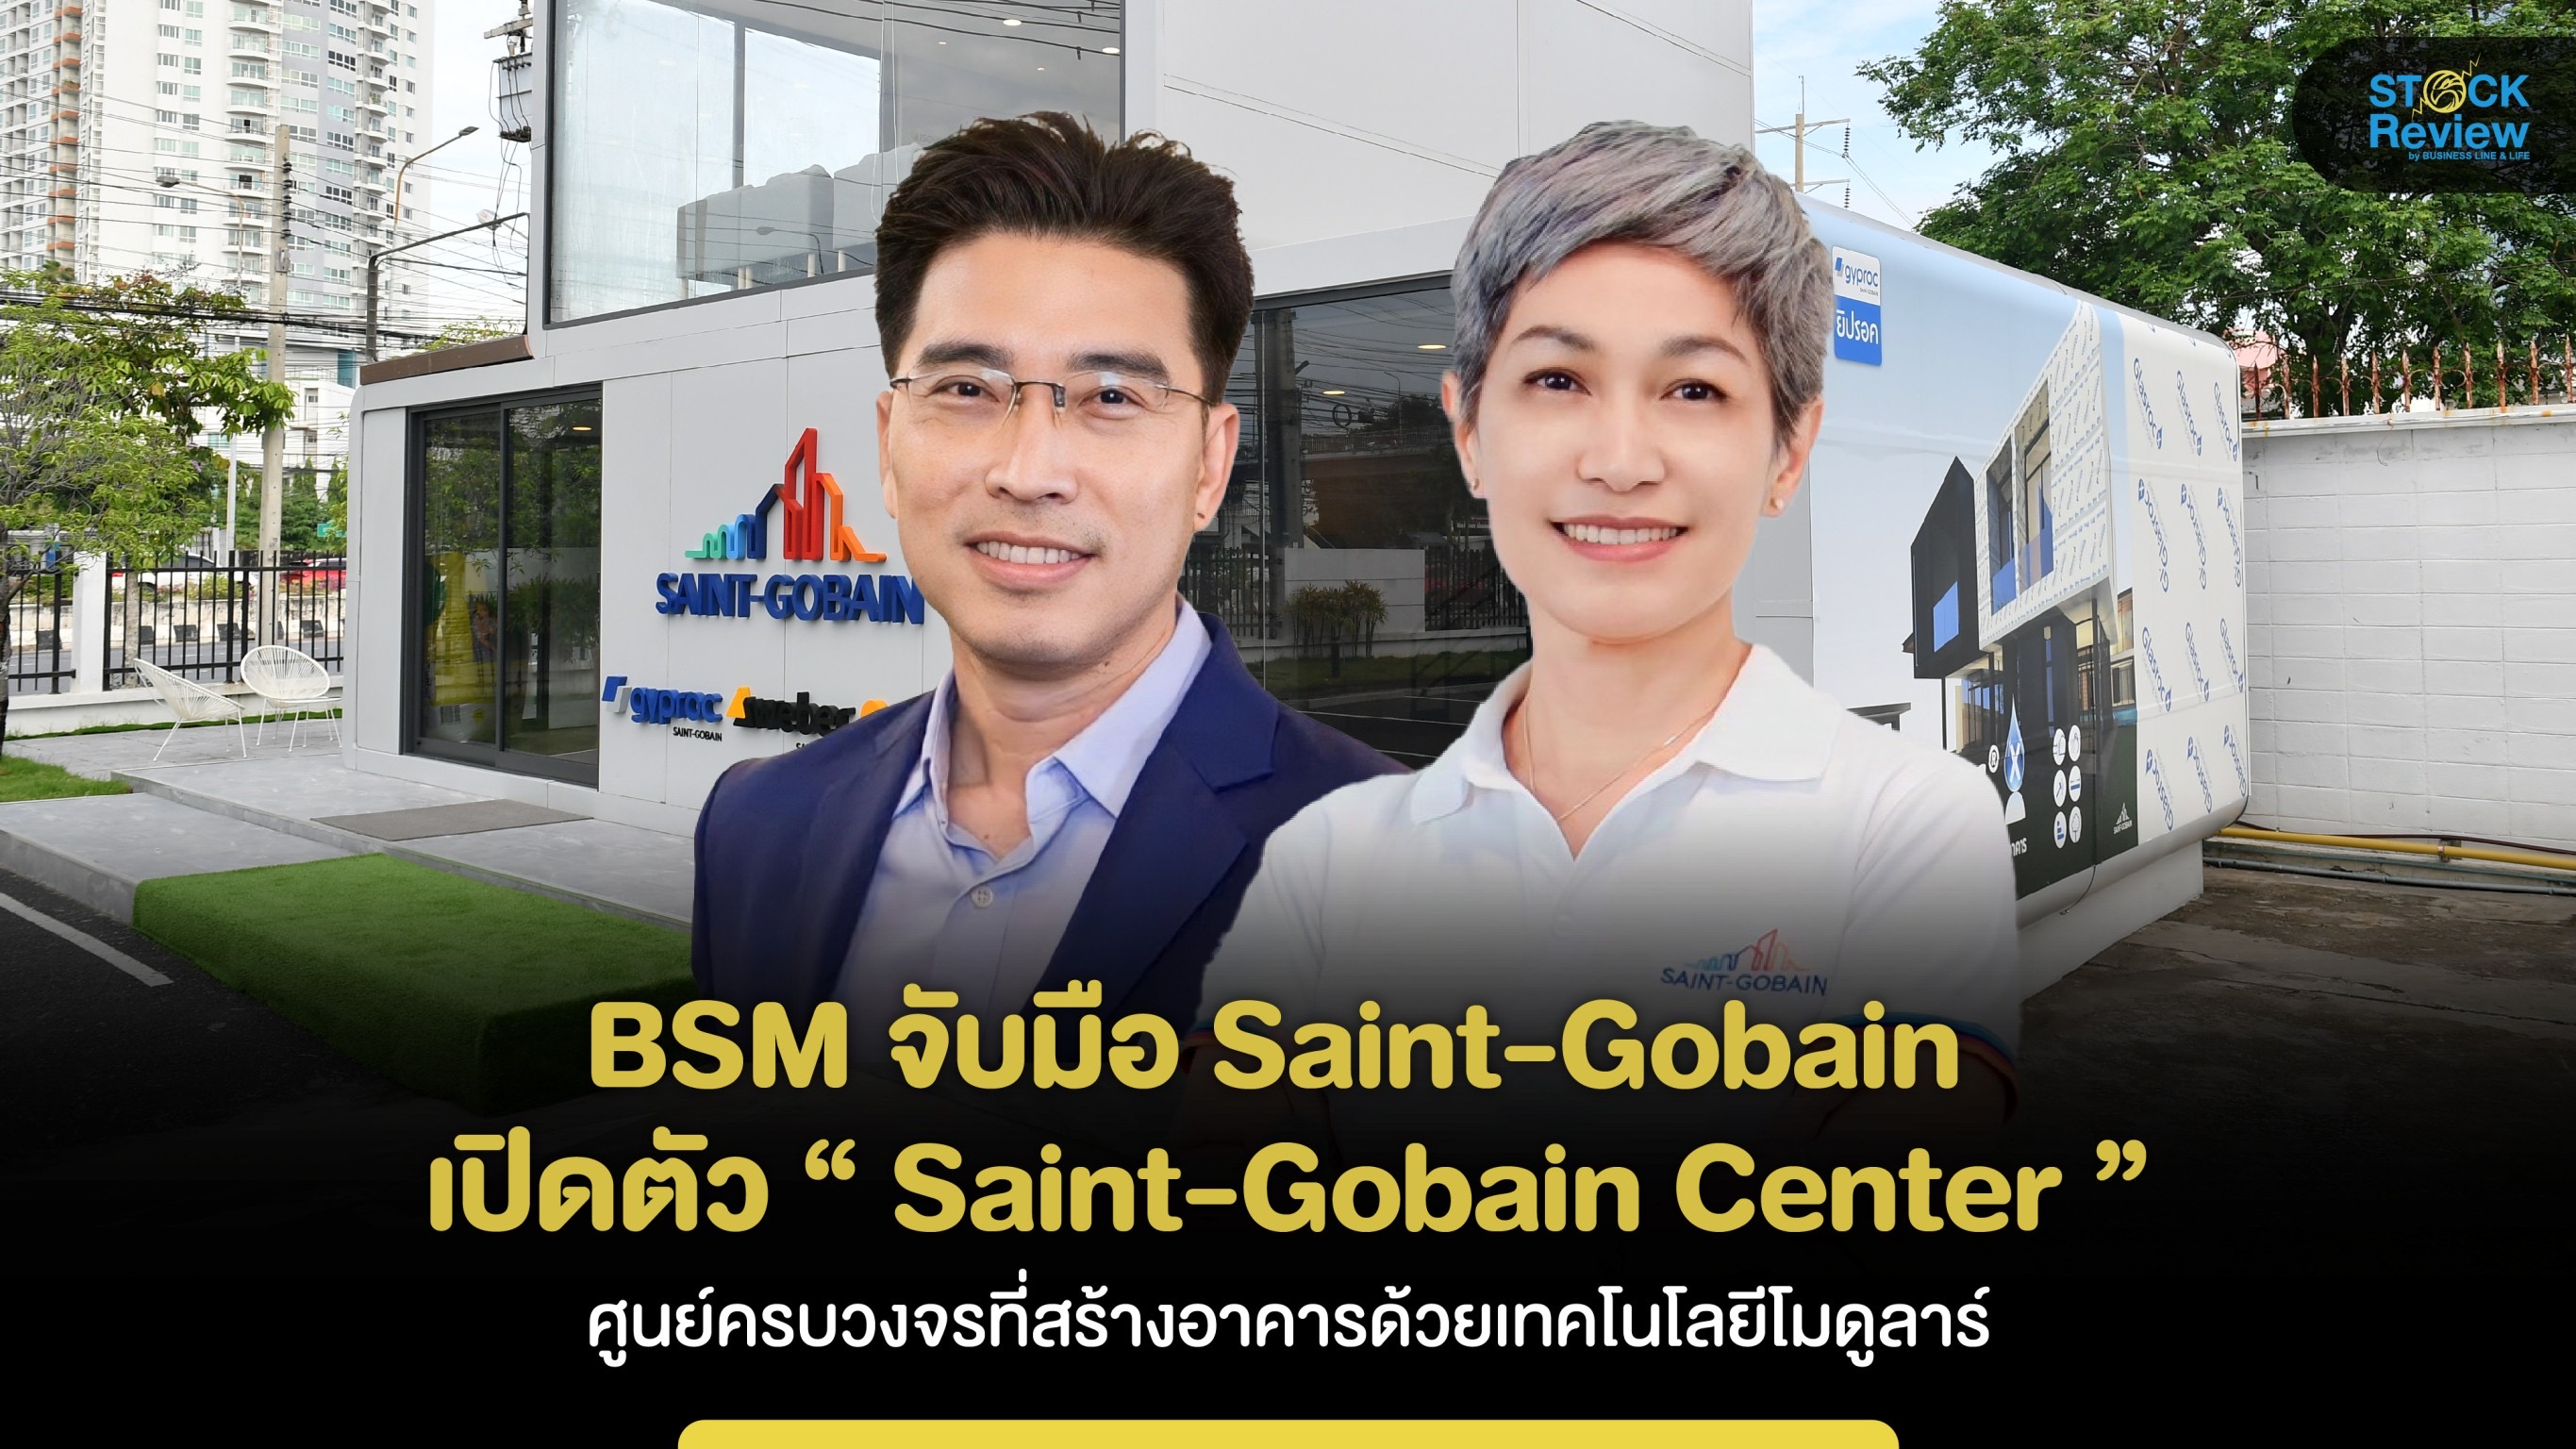 BSM จับมือ Saint-Gobain เปิดตัว “ Saint-Gobain Center ” ศูนย์วัสดุก่อสร้างครบวงจร